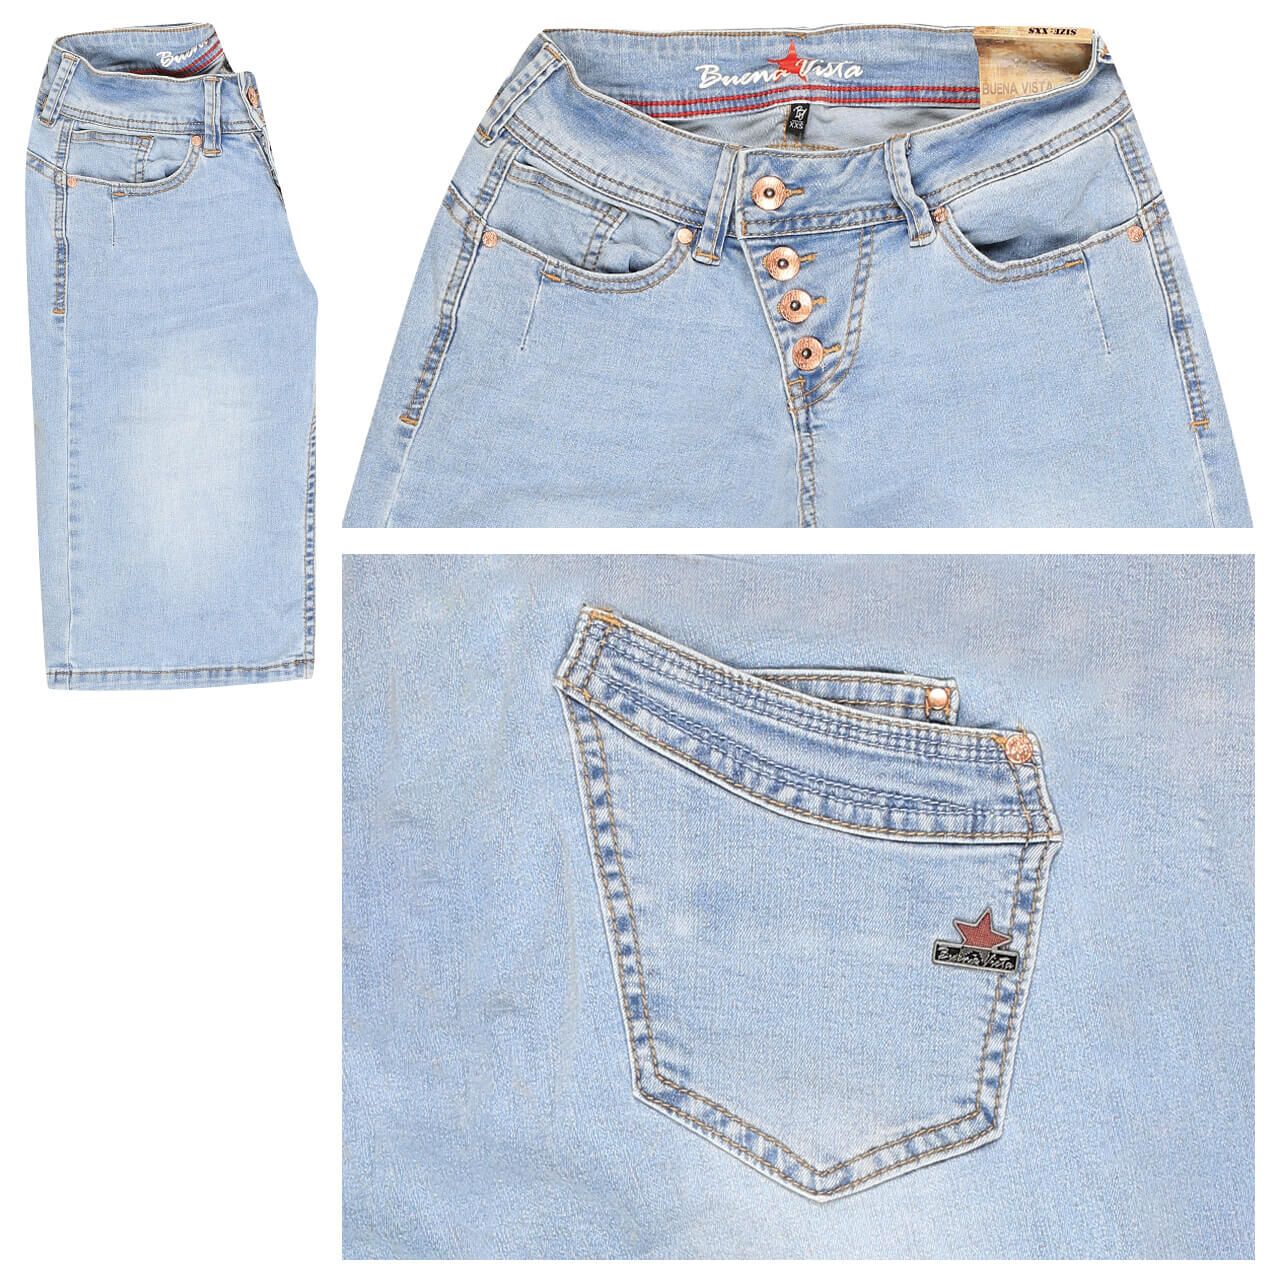 Buena Vista Jeans Malibu-Short Stretch Denim für Damen in Hellblau angewaschen, FarbNr.: 8782